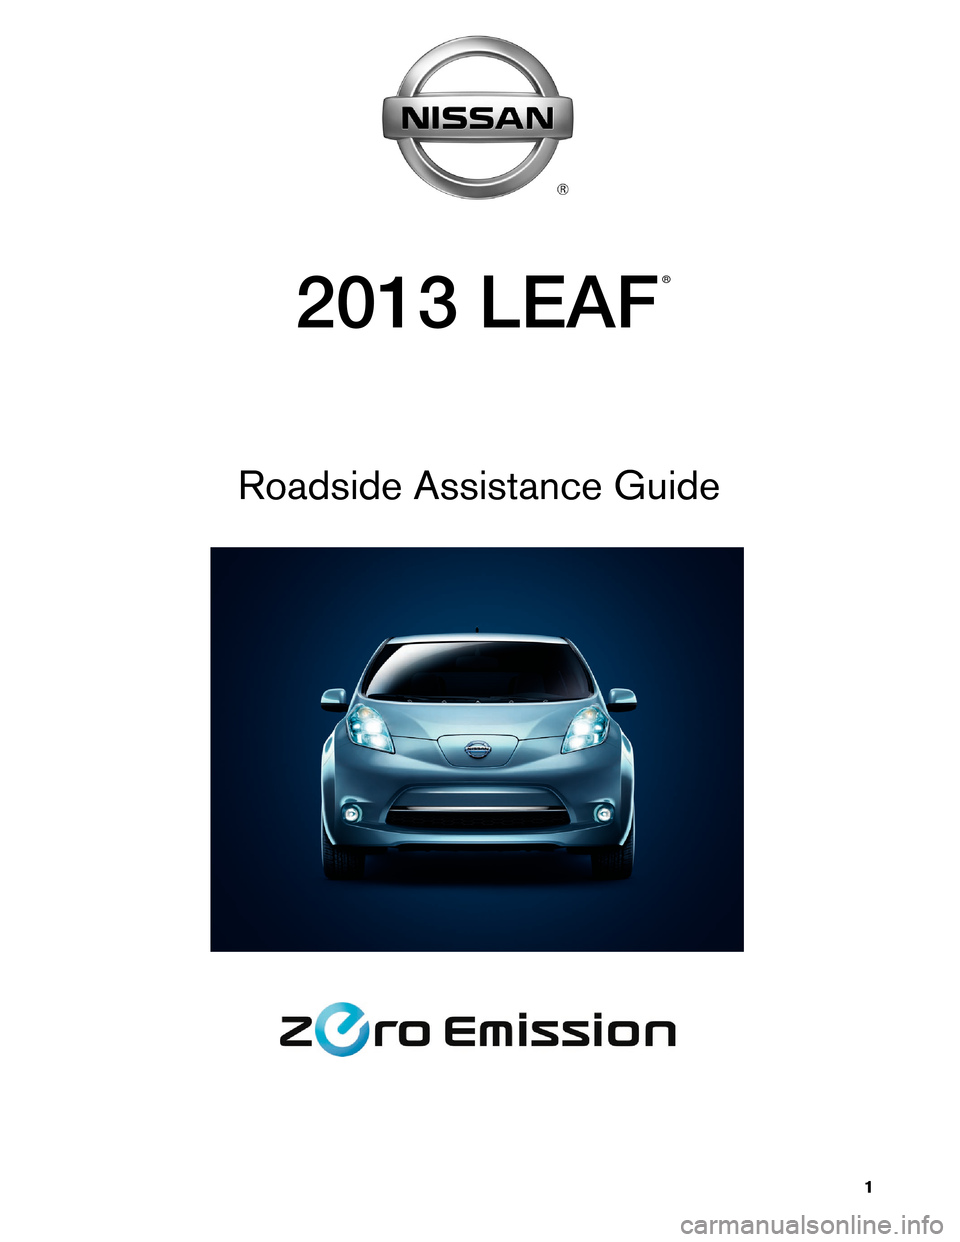 NISSAN LEAF 2013 1.G Roadside Assistance Guide ® 
2013 LEAF
Roadside Assistance Guide
1    